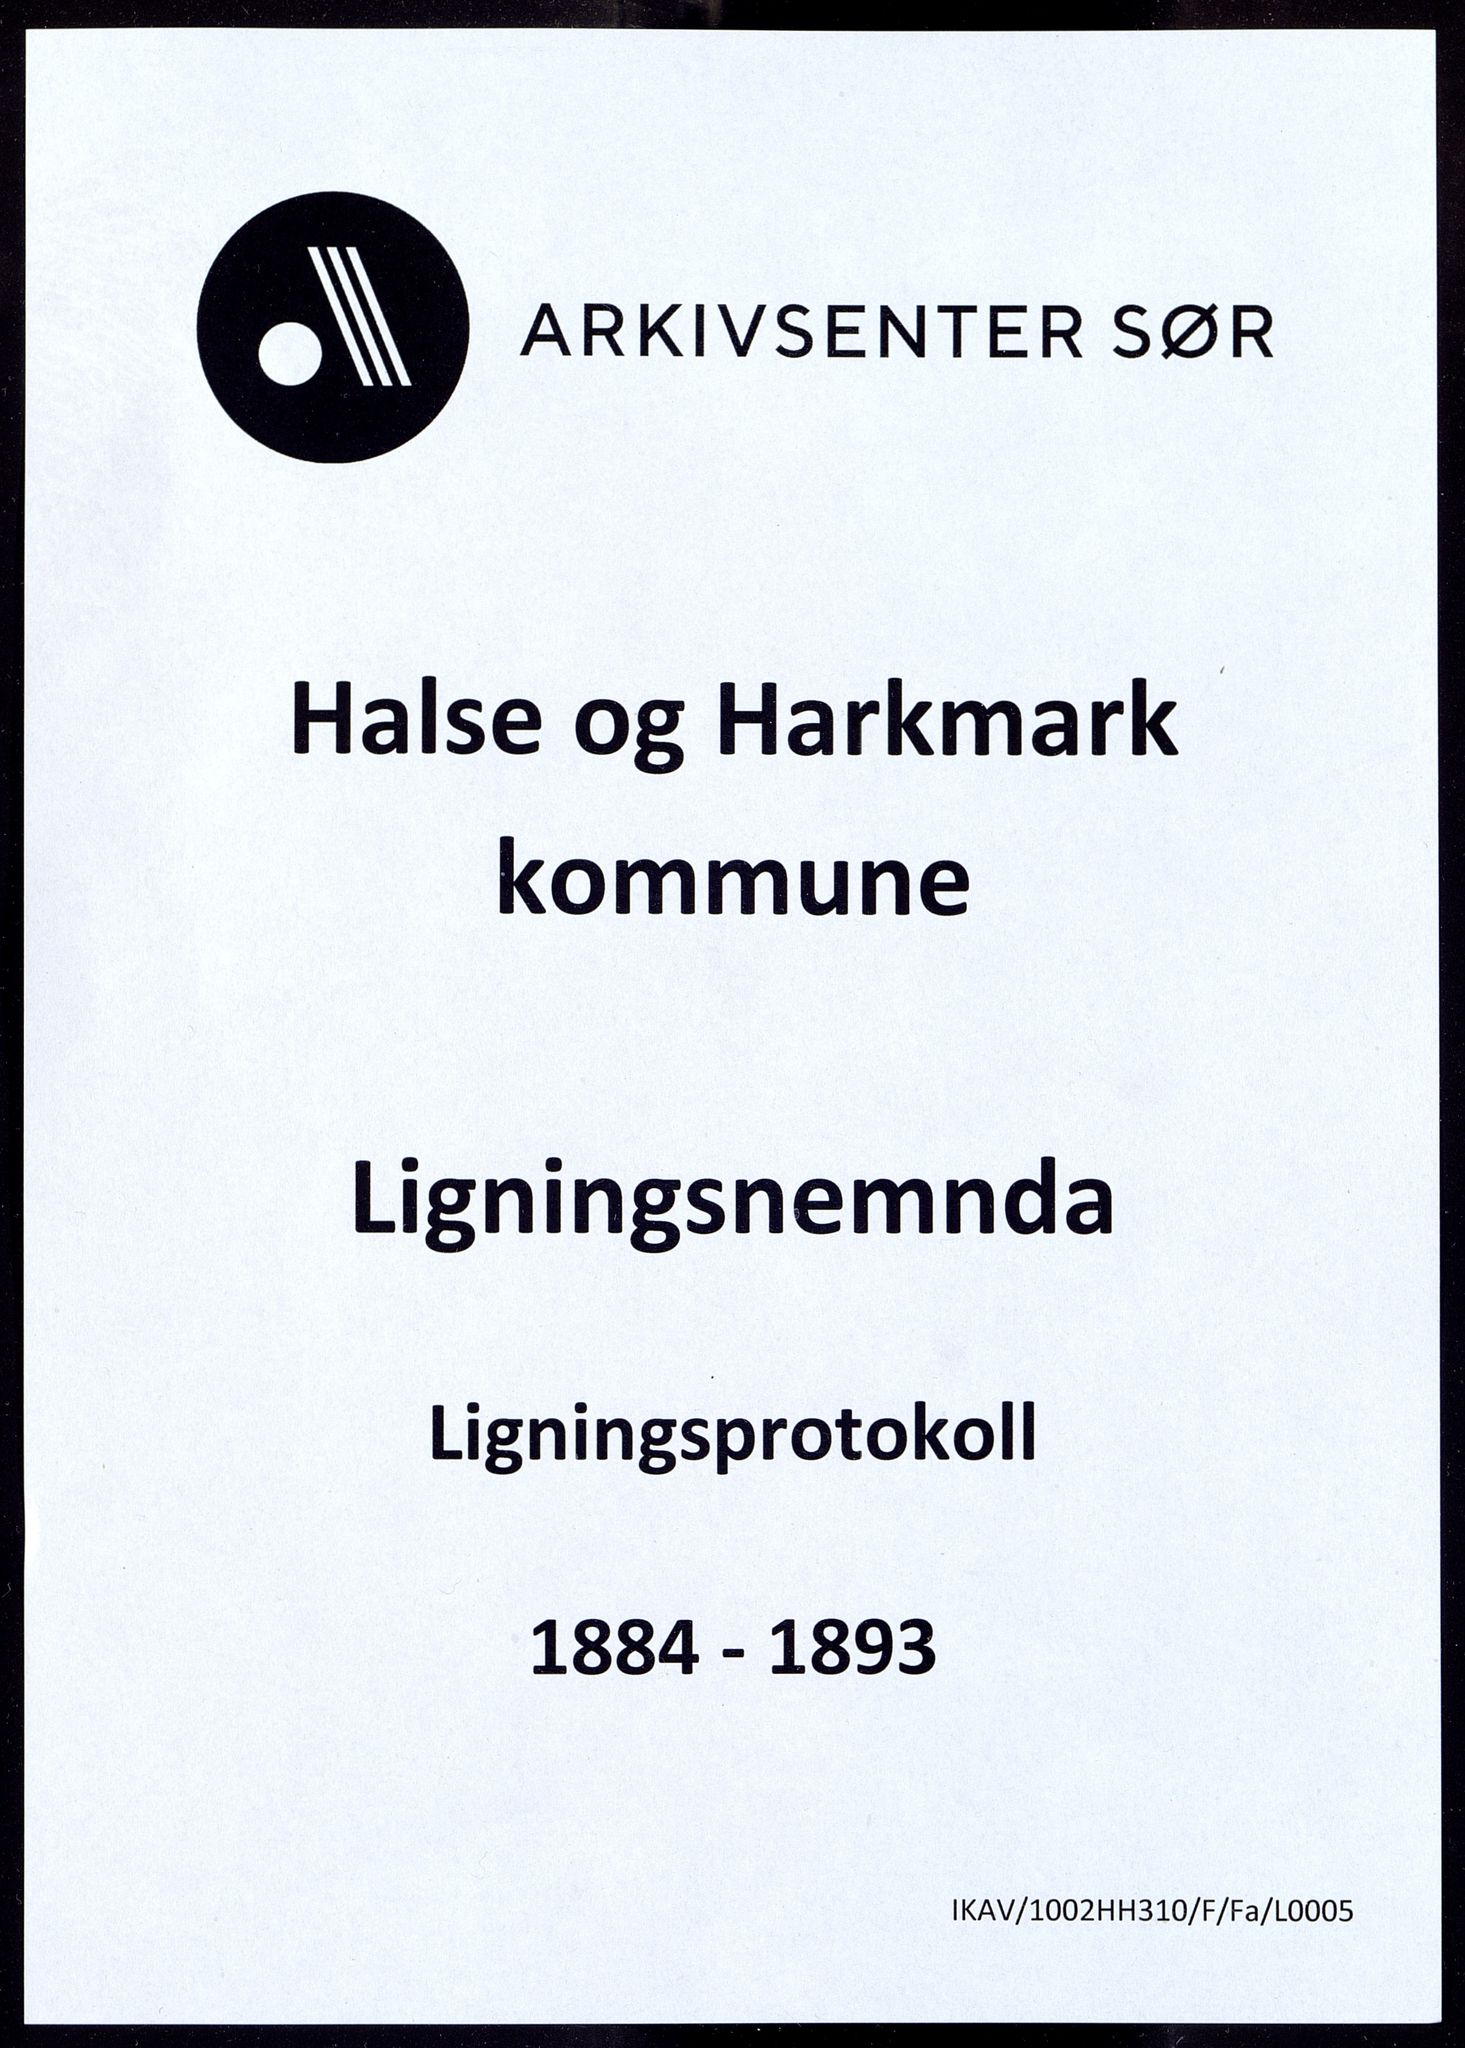 Halse og Harkmark kommune - Ligningsnemda, IKAV/1002HH310/F/Fa/L0005: Ligningsprotokoll, Halse, 1884-1893